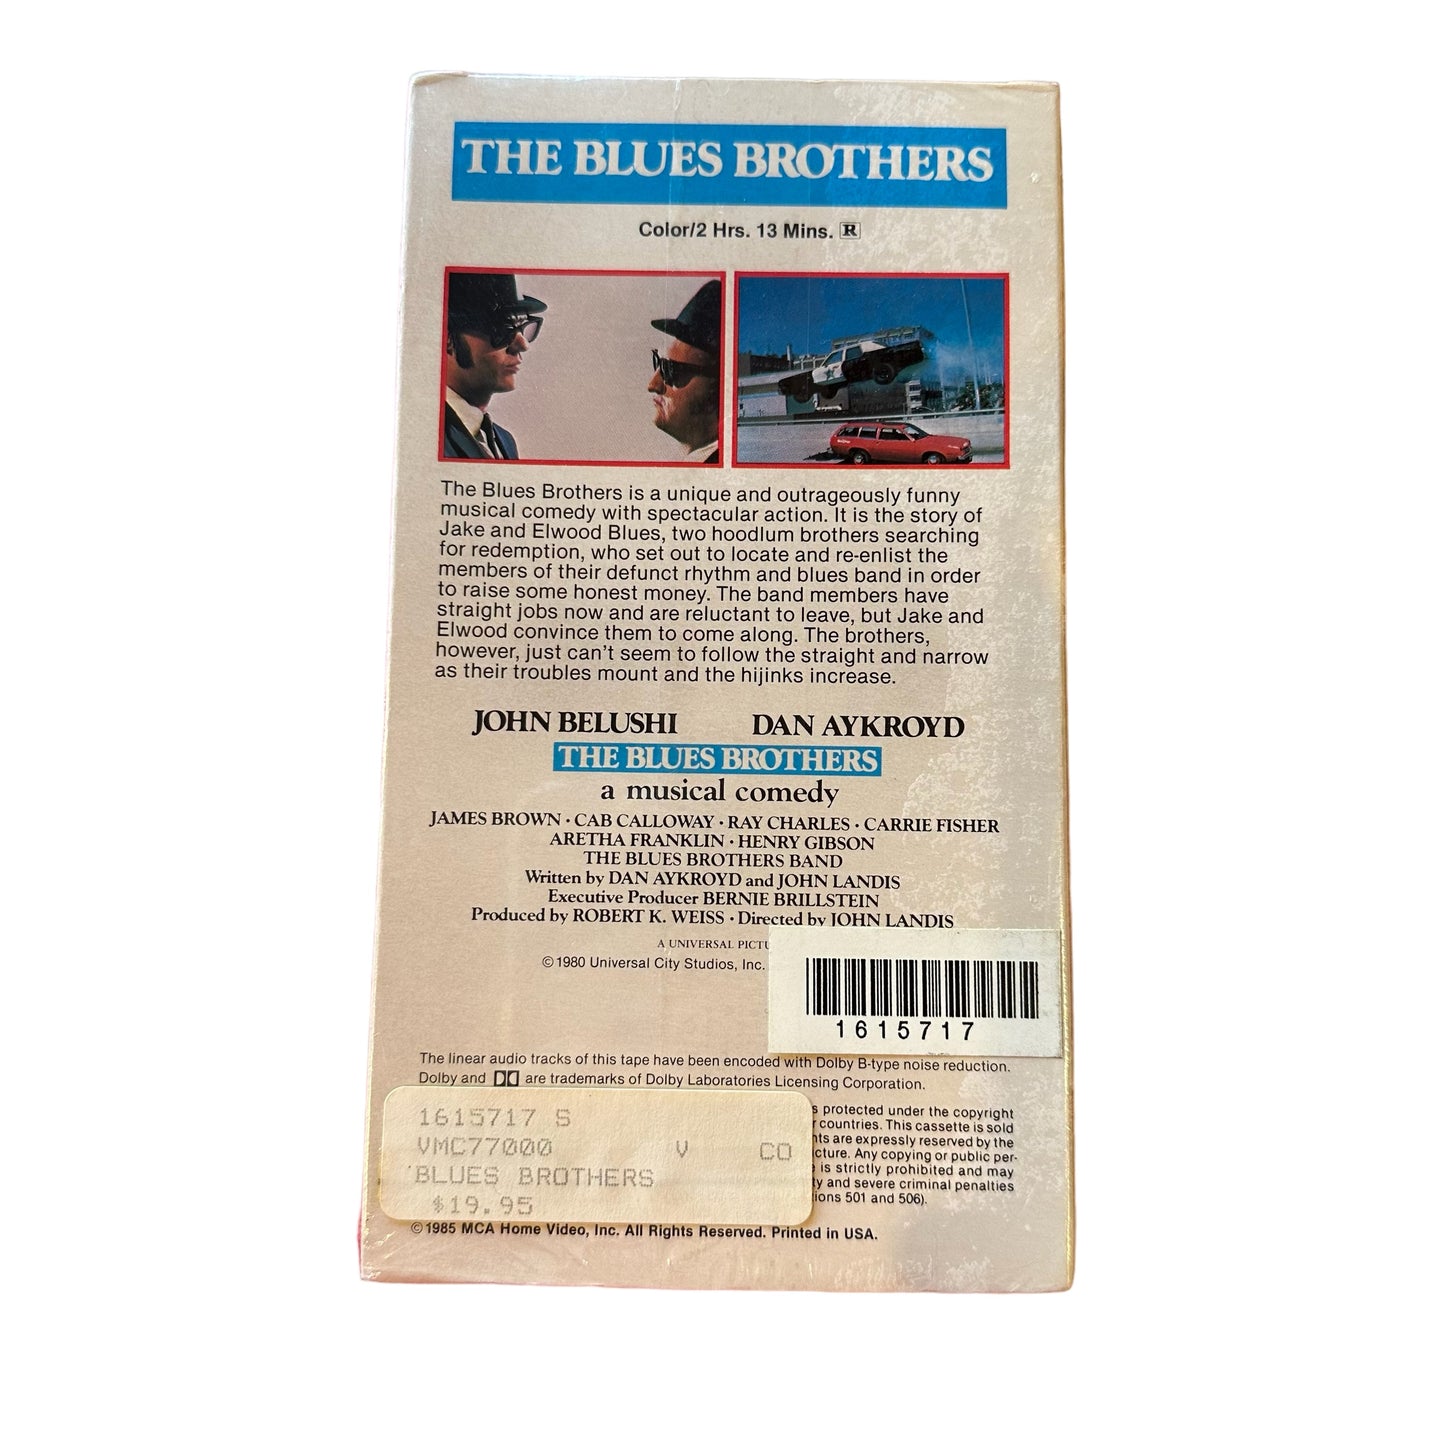 VHS ビデオテープ 輸入版 未使用 THE BLUES BROTHERS ブルース・ブラザーズ 海外版 USA アメリカ ヴィンテージ ビデオ 紙ジャケ